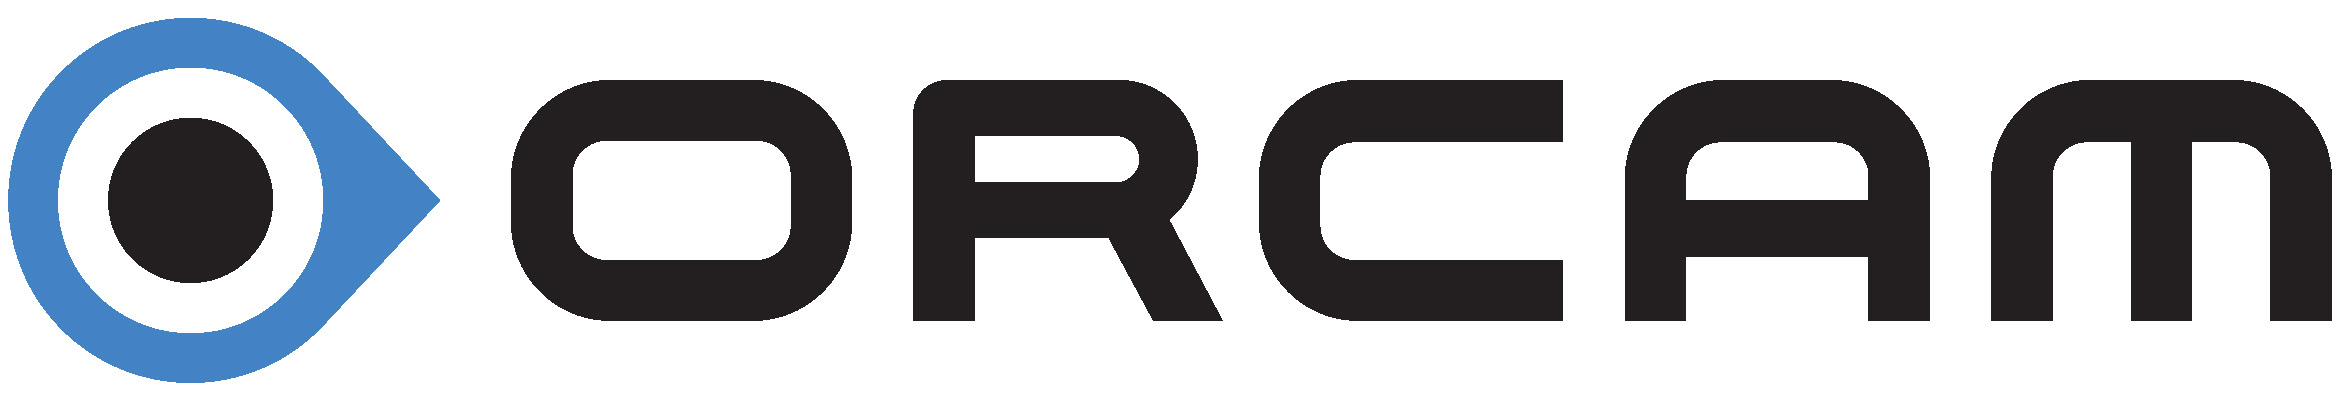 Das Bild zeigt das Logo des Herstellers der OrCam, die OrCam Ltd.